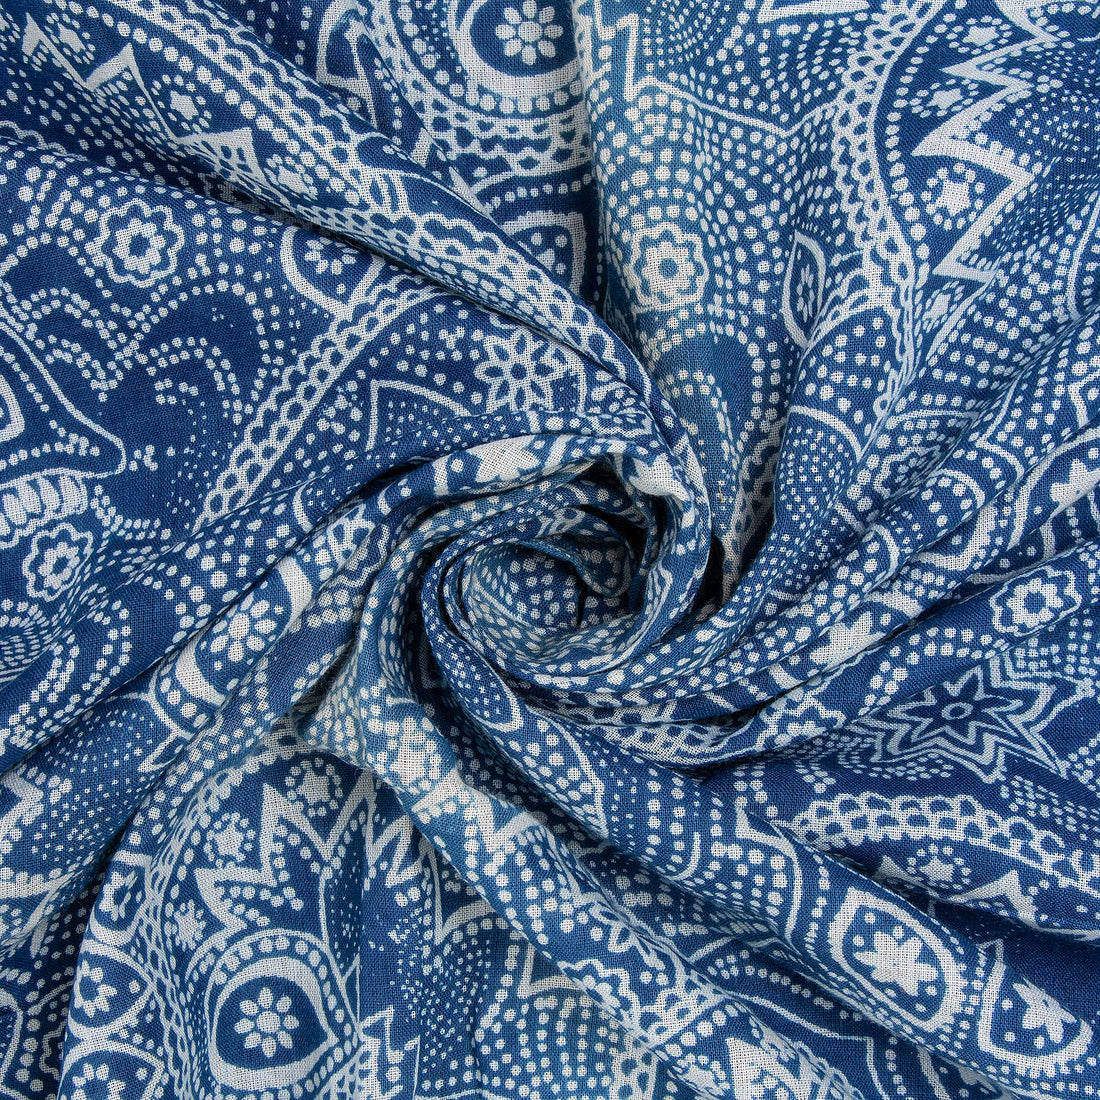 Handmade Indigo Blue Print Pure Indigo Cotton Fabric For Dress